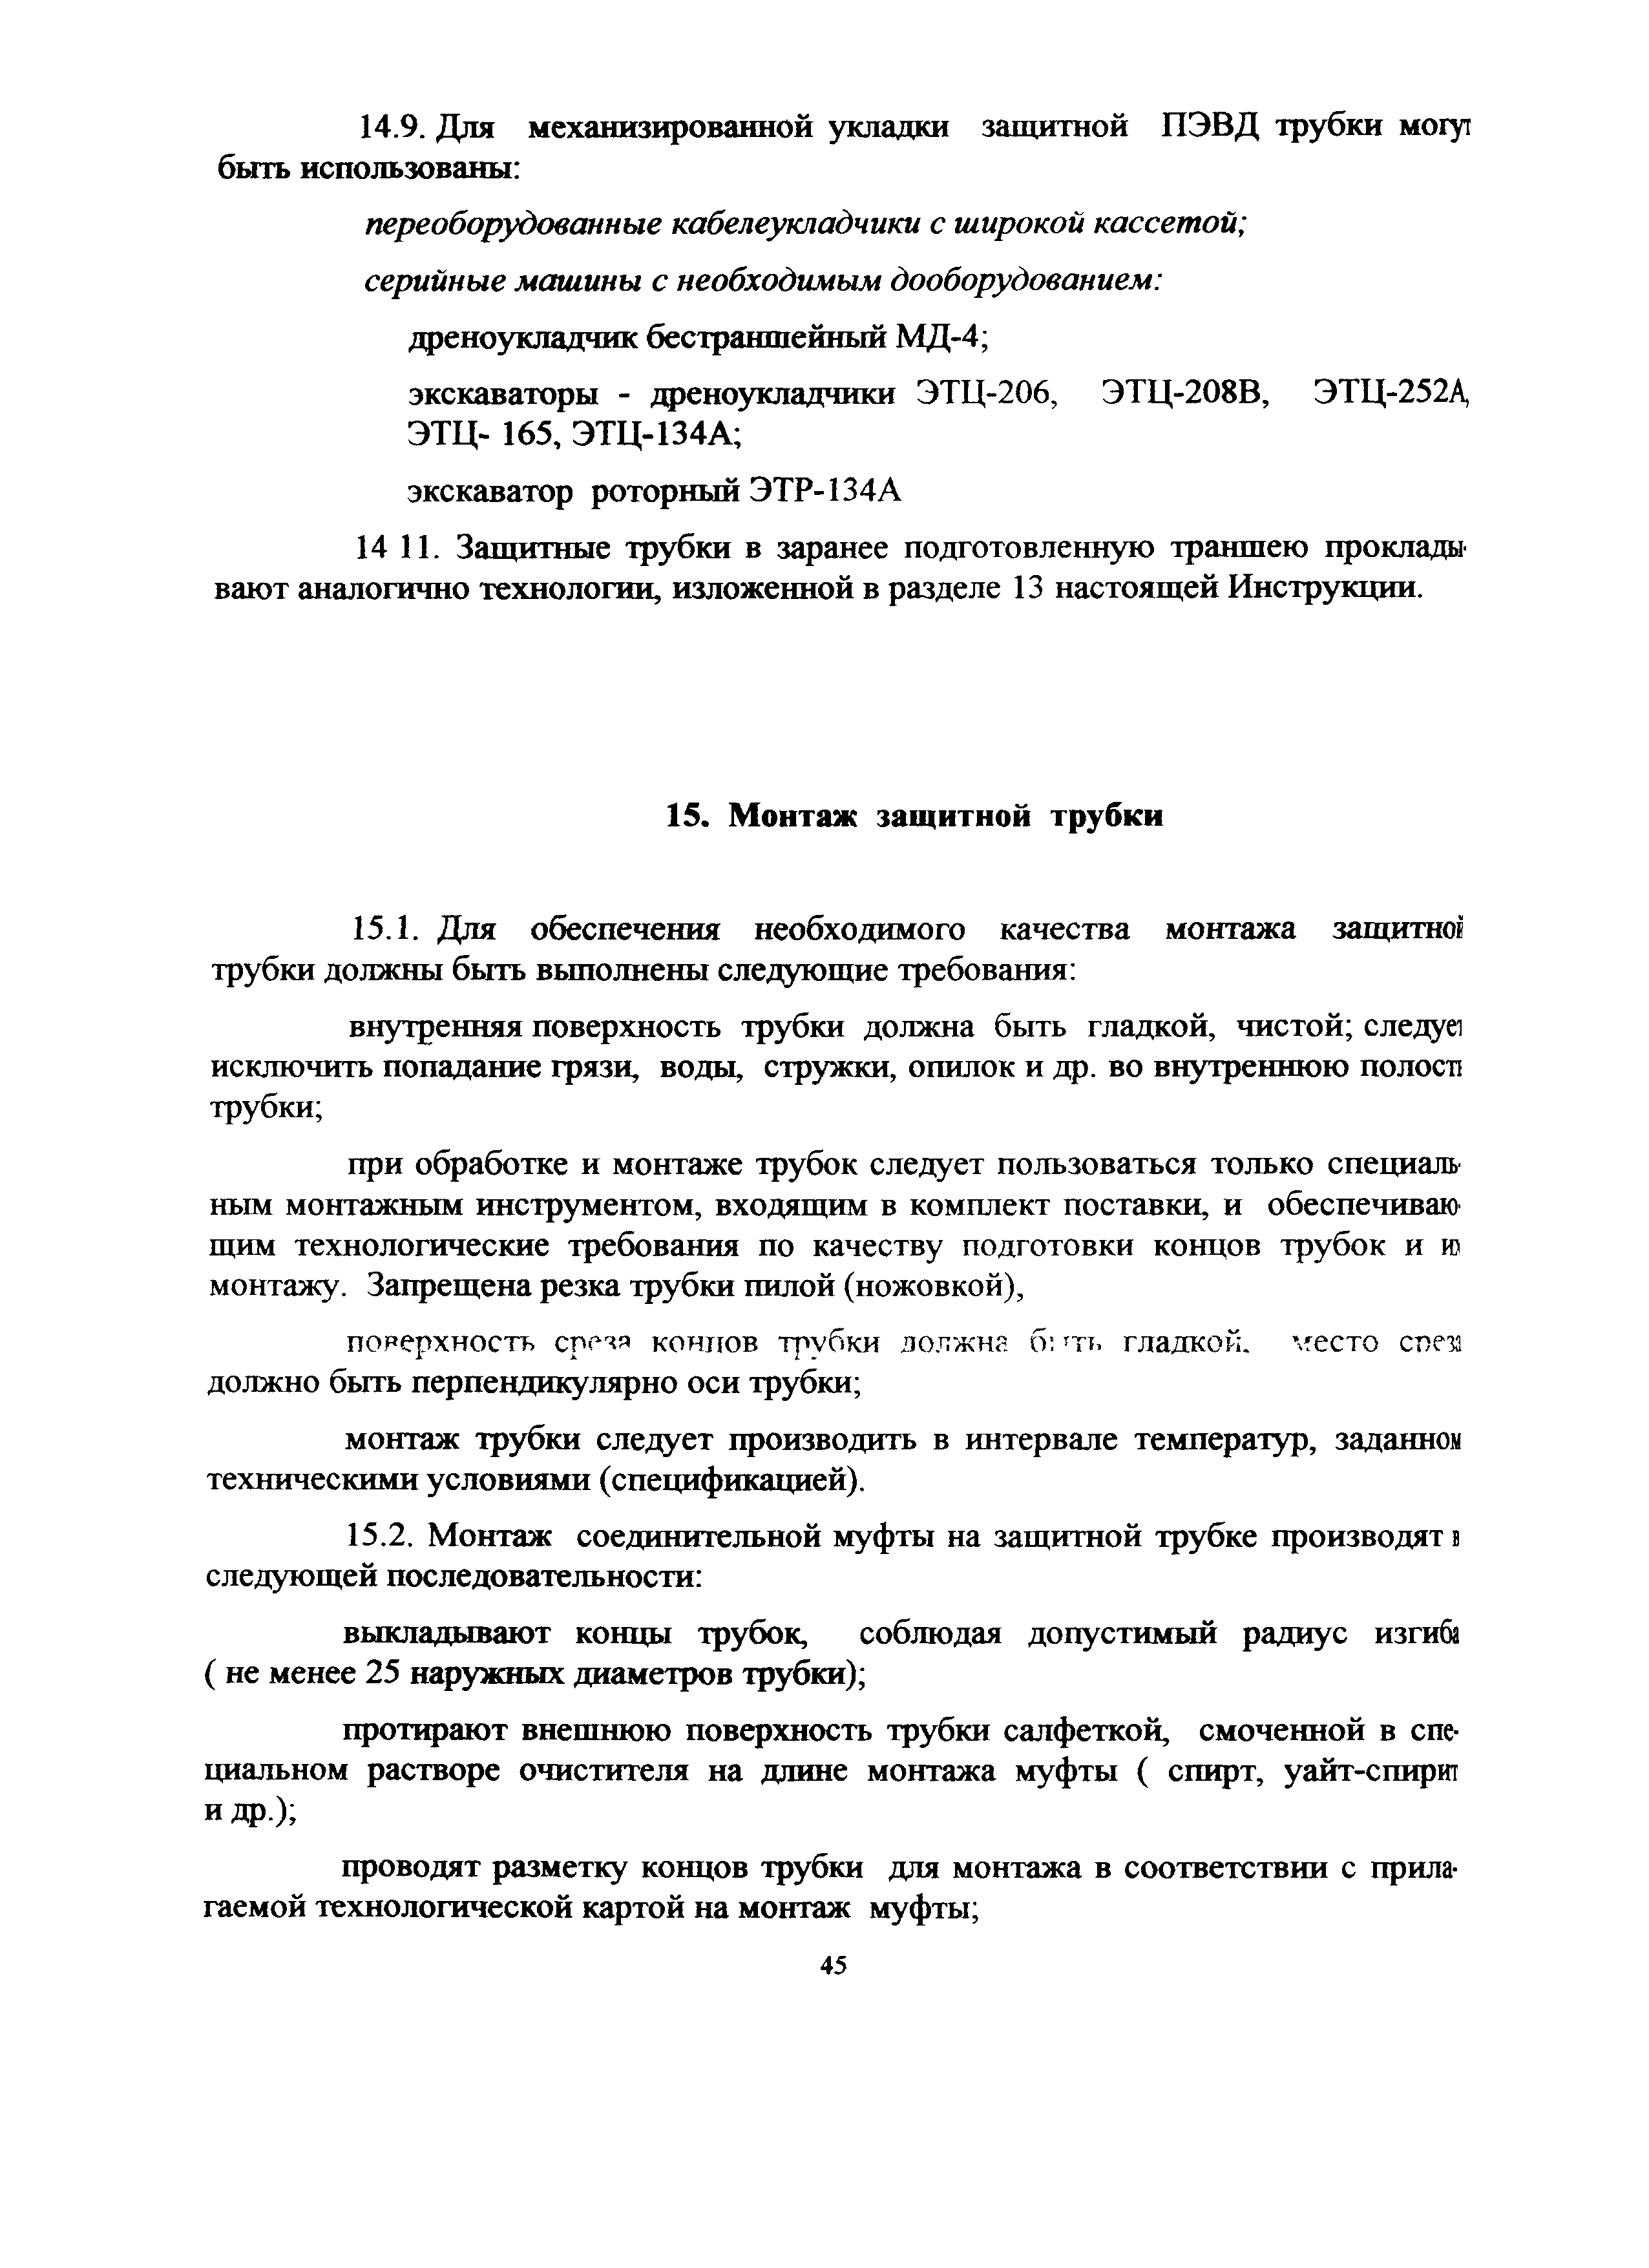 ВСН 51-1.15-004-97